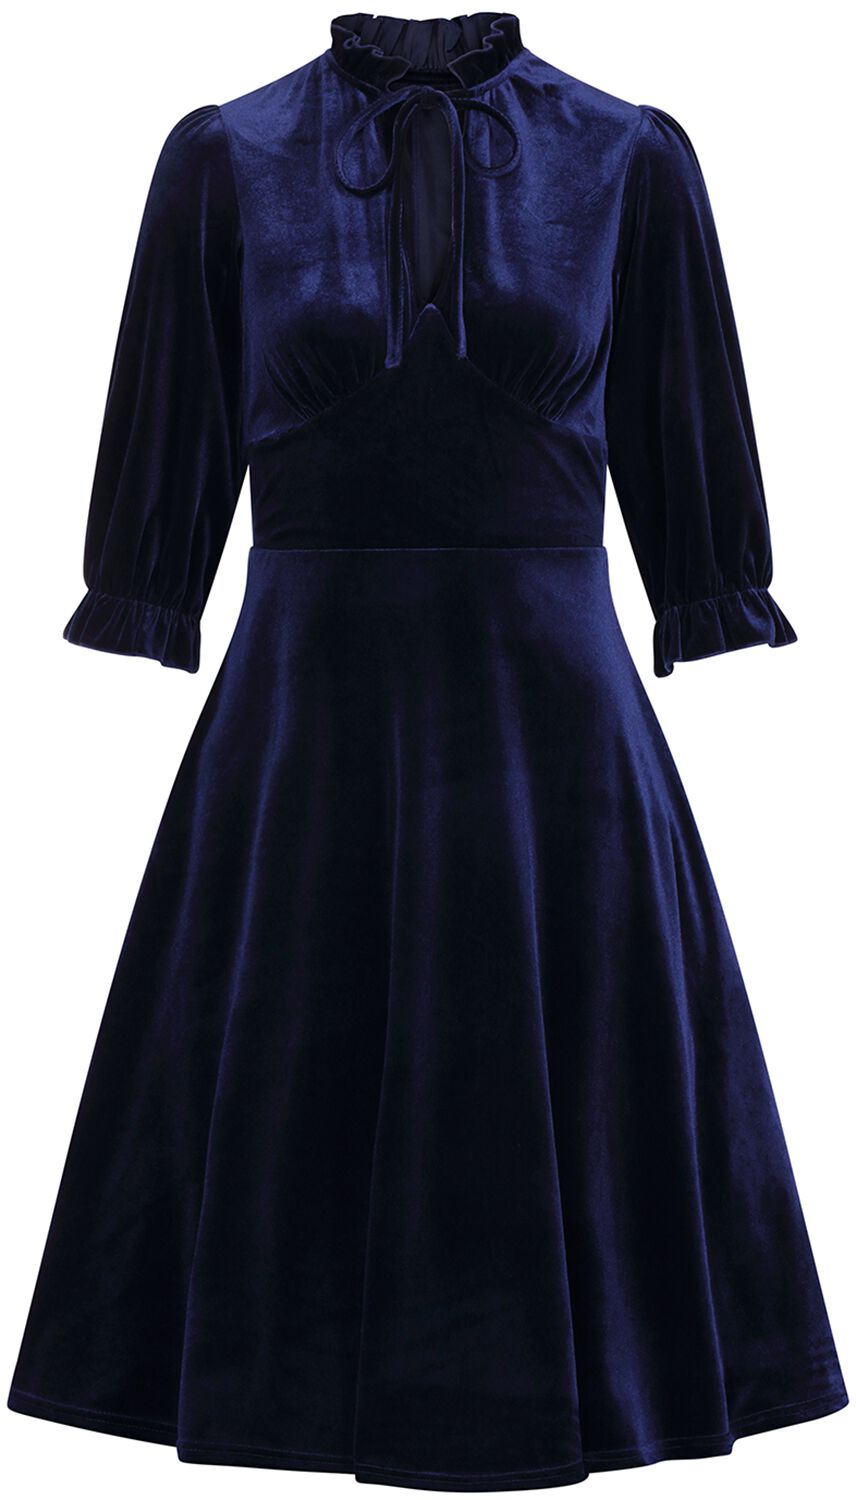 Hell Bunny - Rockabilly Kleid knielang - Orion Dress - XS bis 4XL - für Damen - Größe XXL - blau von hell bunny